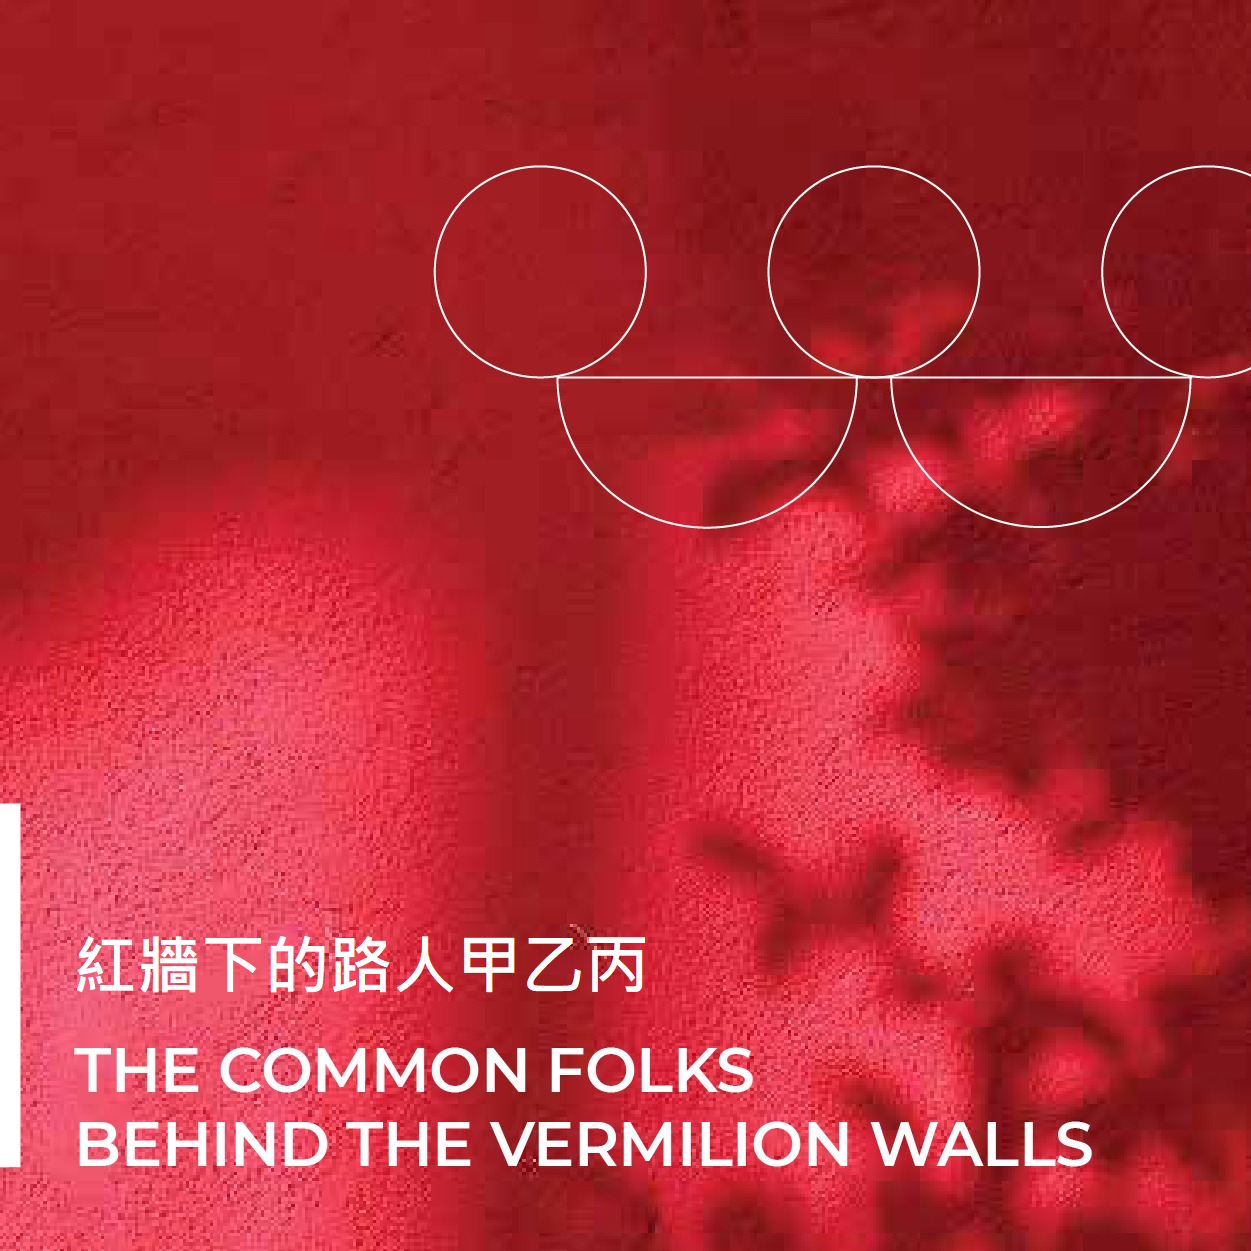 「穿越紫禁城 ─ 红牆下的路人甲乙丙」网上展览